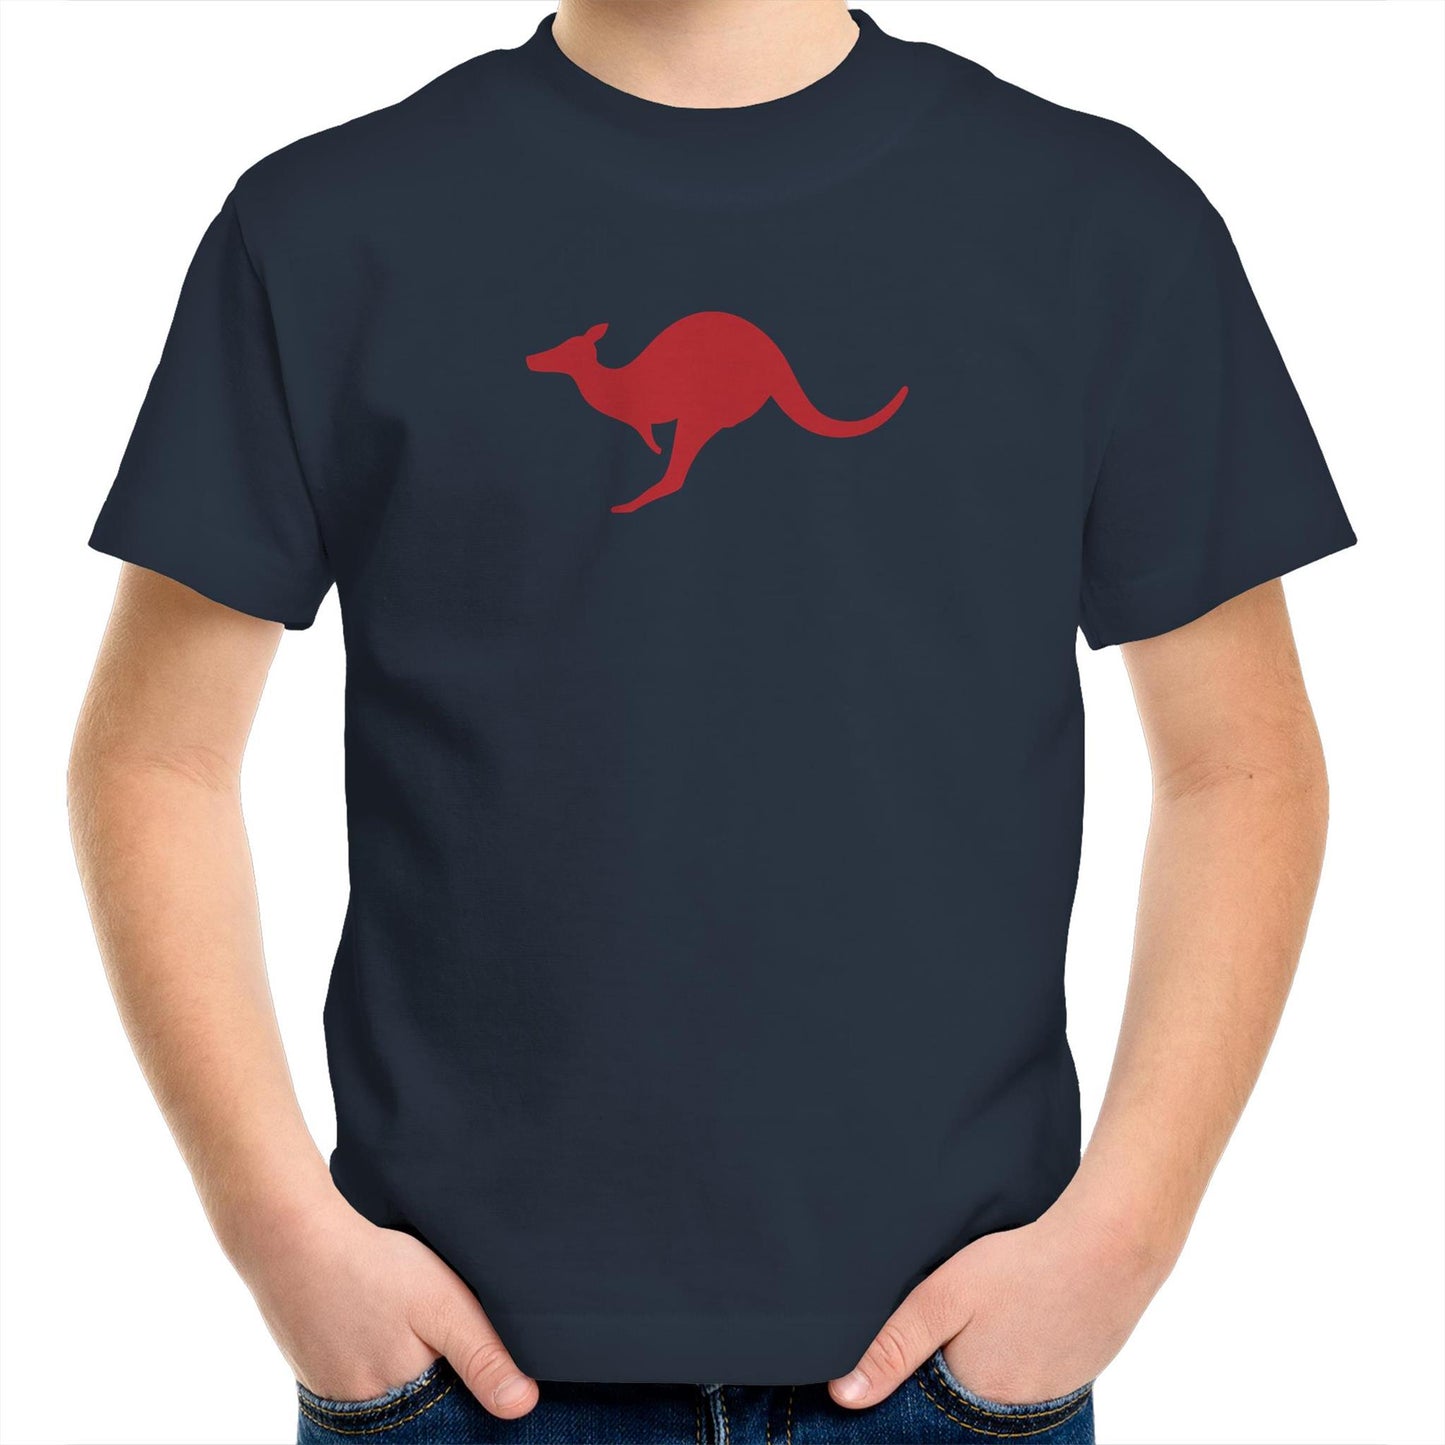 Kangaroo Too T Shirts for Kids